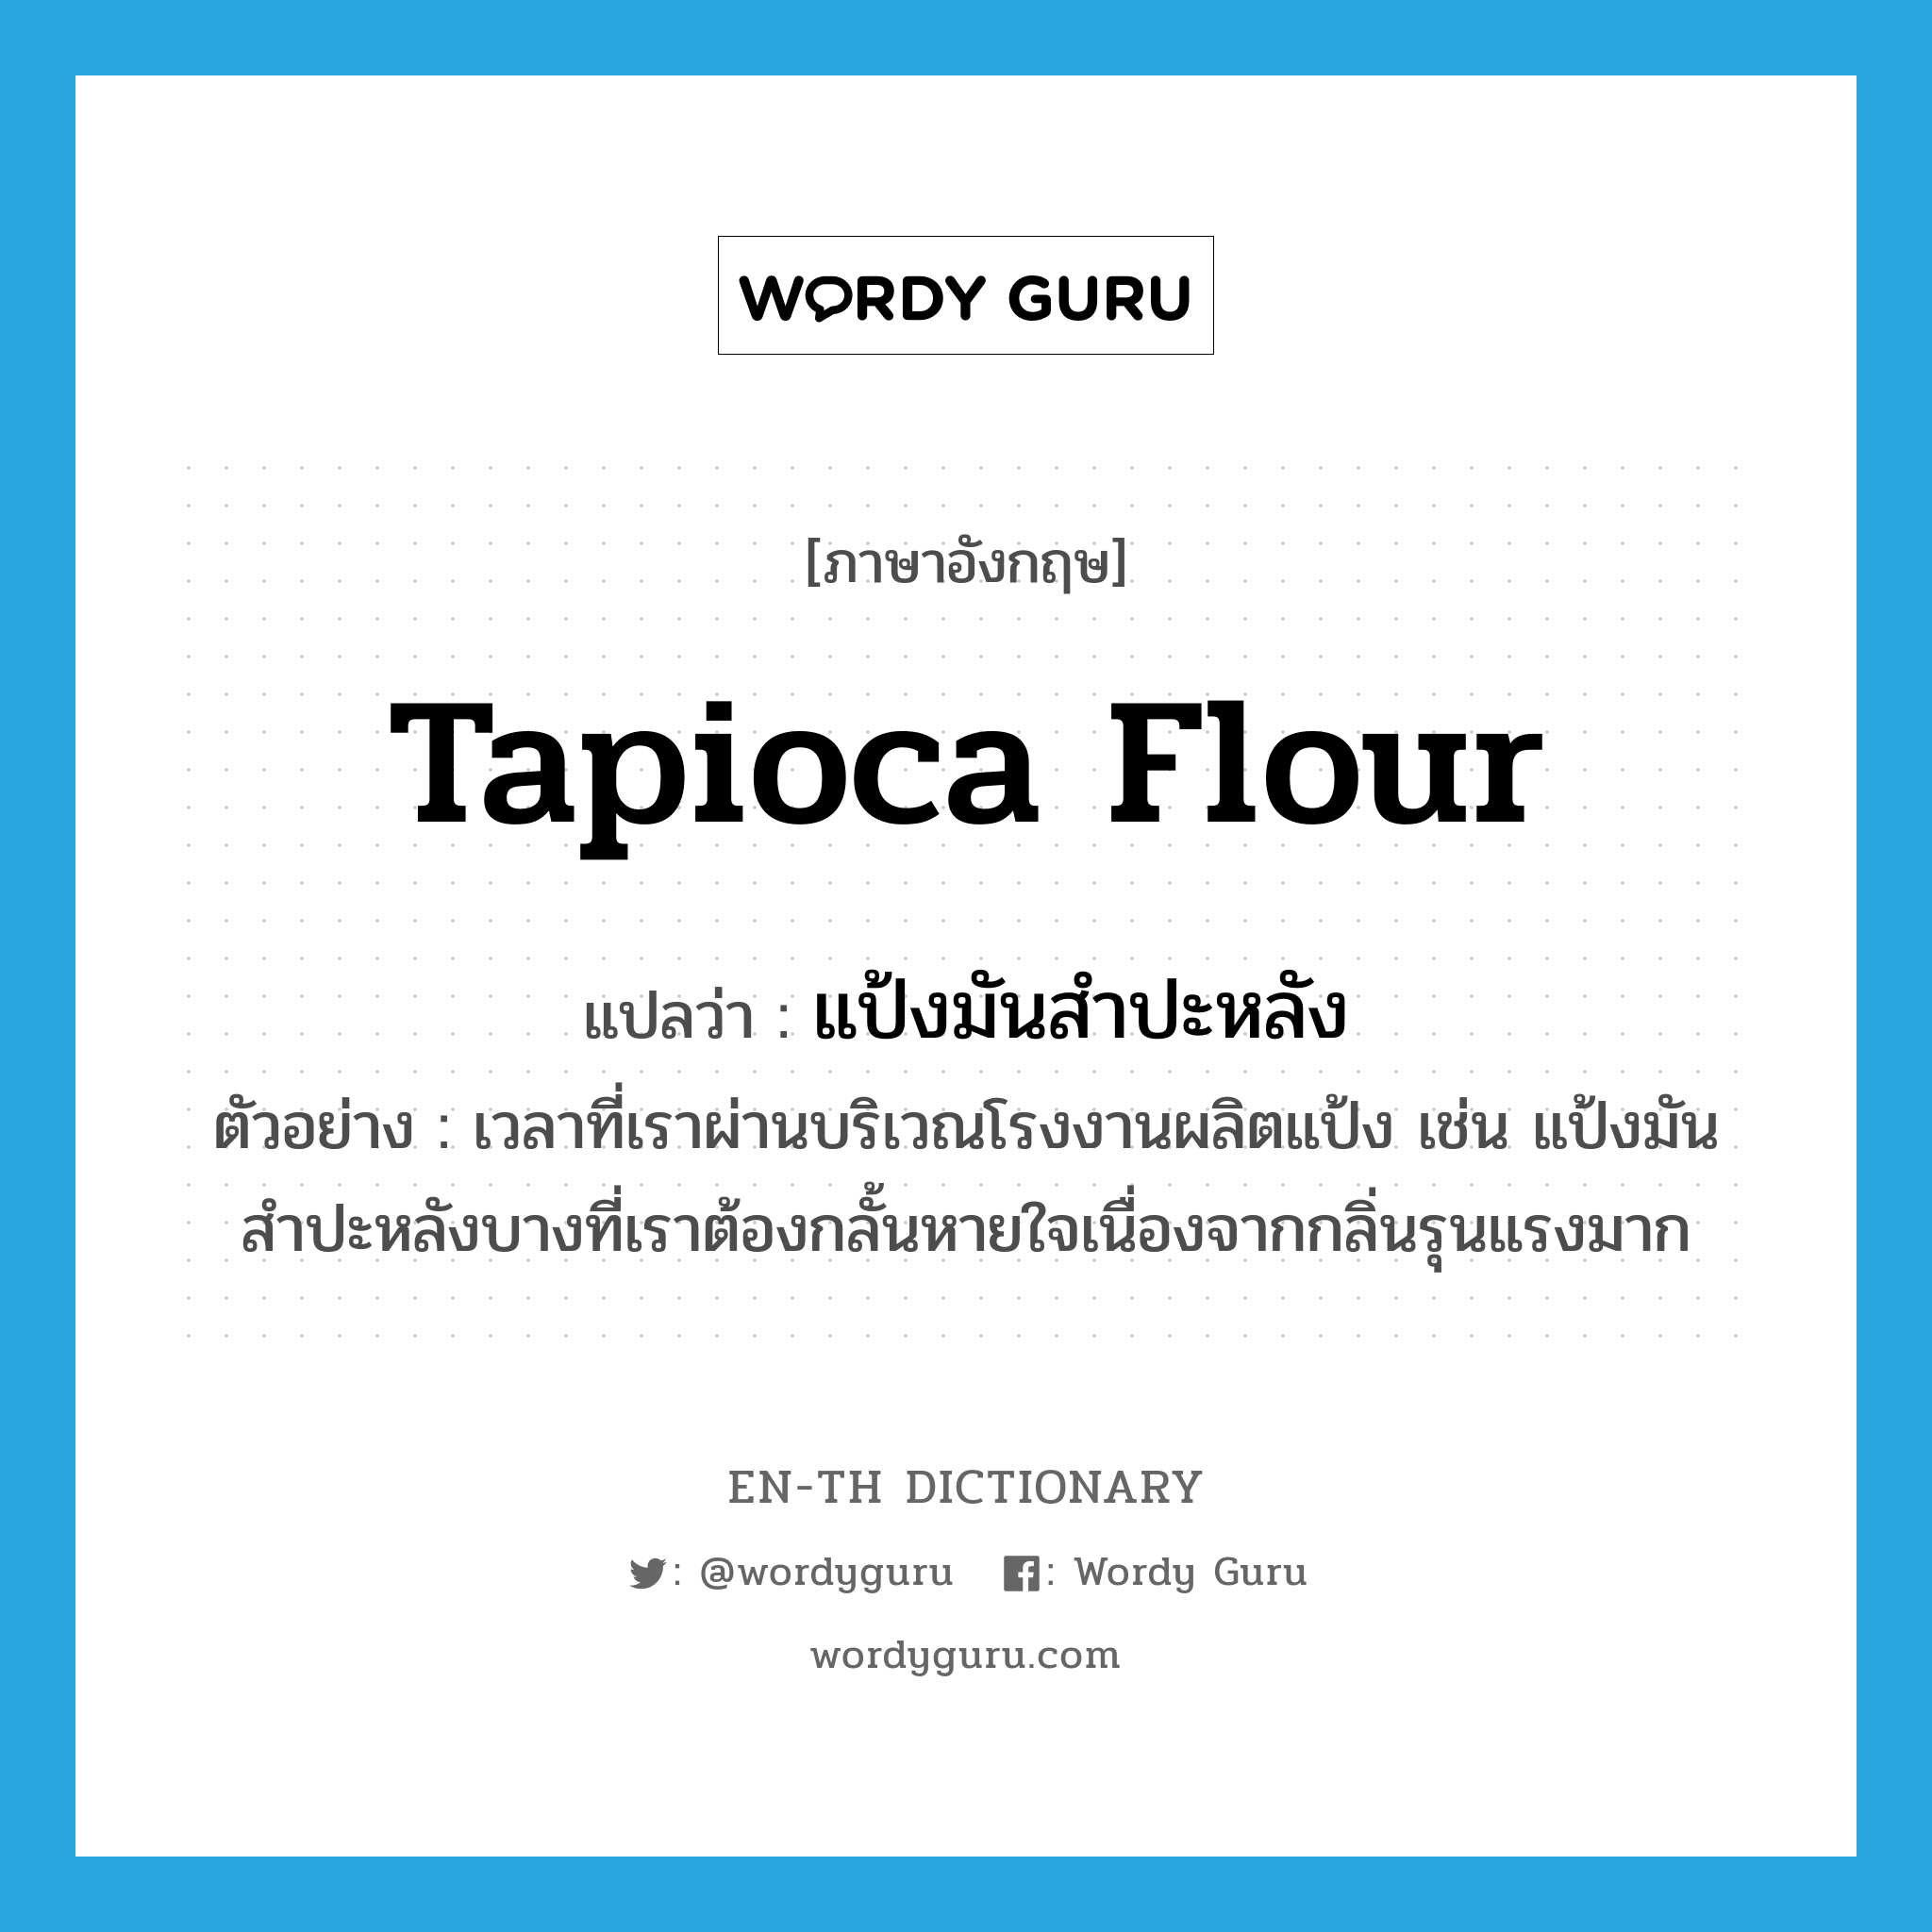 tapioca flour แปลว่า?, คำศัพท์ภาษาอังกฤษ tapioca flour แปลว่า แป้งมันสำปะหลัง ประเภท N ตัวอย่าง เวลาที่เราผ่านบริเวณโรงงานผลิตแป้ง เช่น แป้งมันสำปะหลังบางที่เราต้องกลั้นหายใจเนื่องจากกลิ่นรุนแรงมาก หมวด N